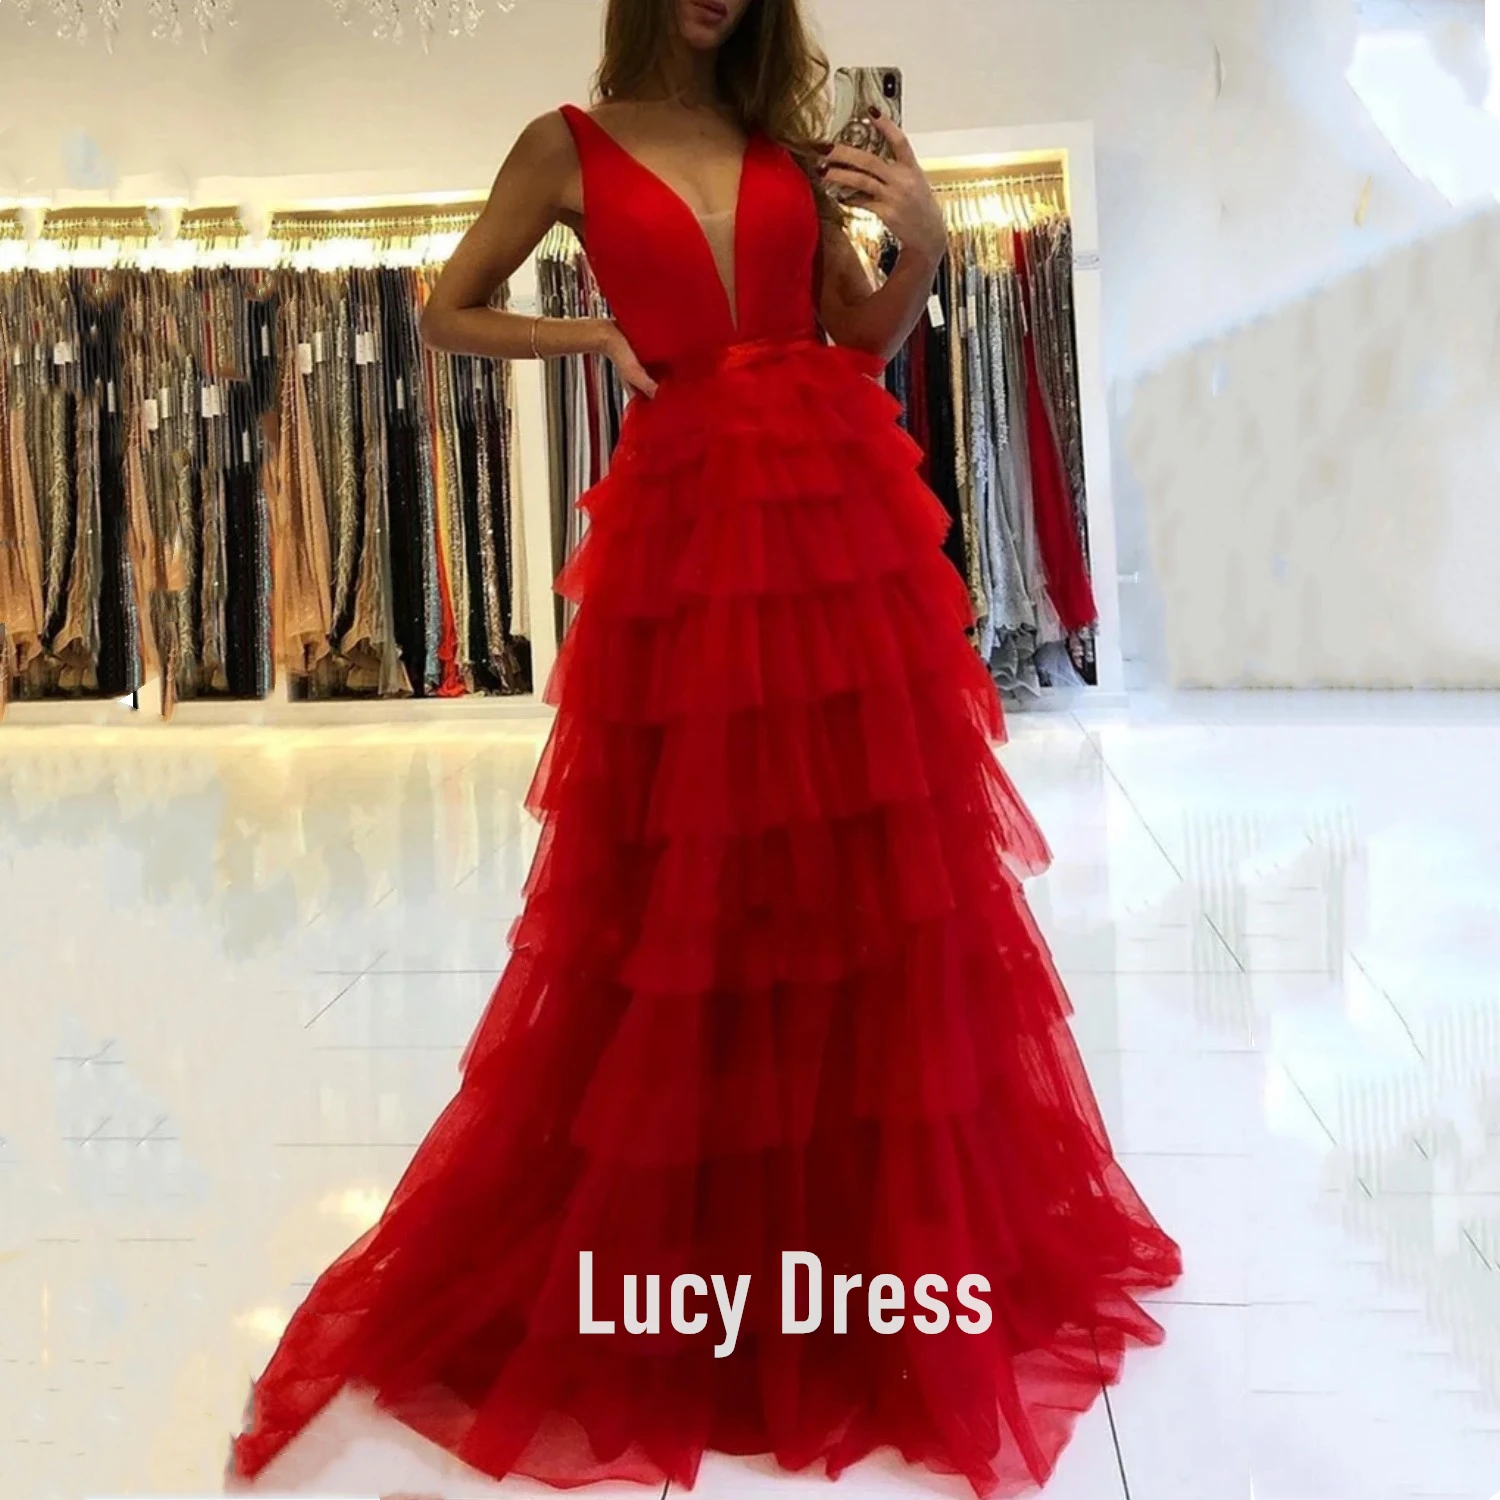 

Lucy A-line Sheer Deep V Neck Prom Dress вечерние платья Tiered Tulle vestidos Formal Evening Dresses Long abendkleider Custom